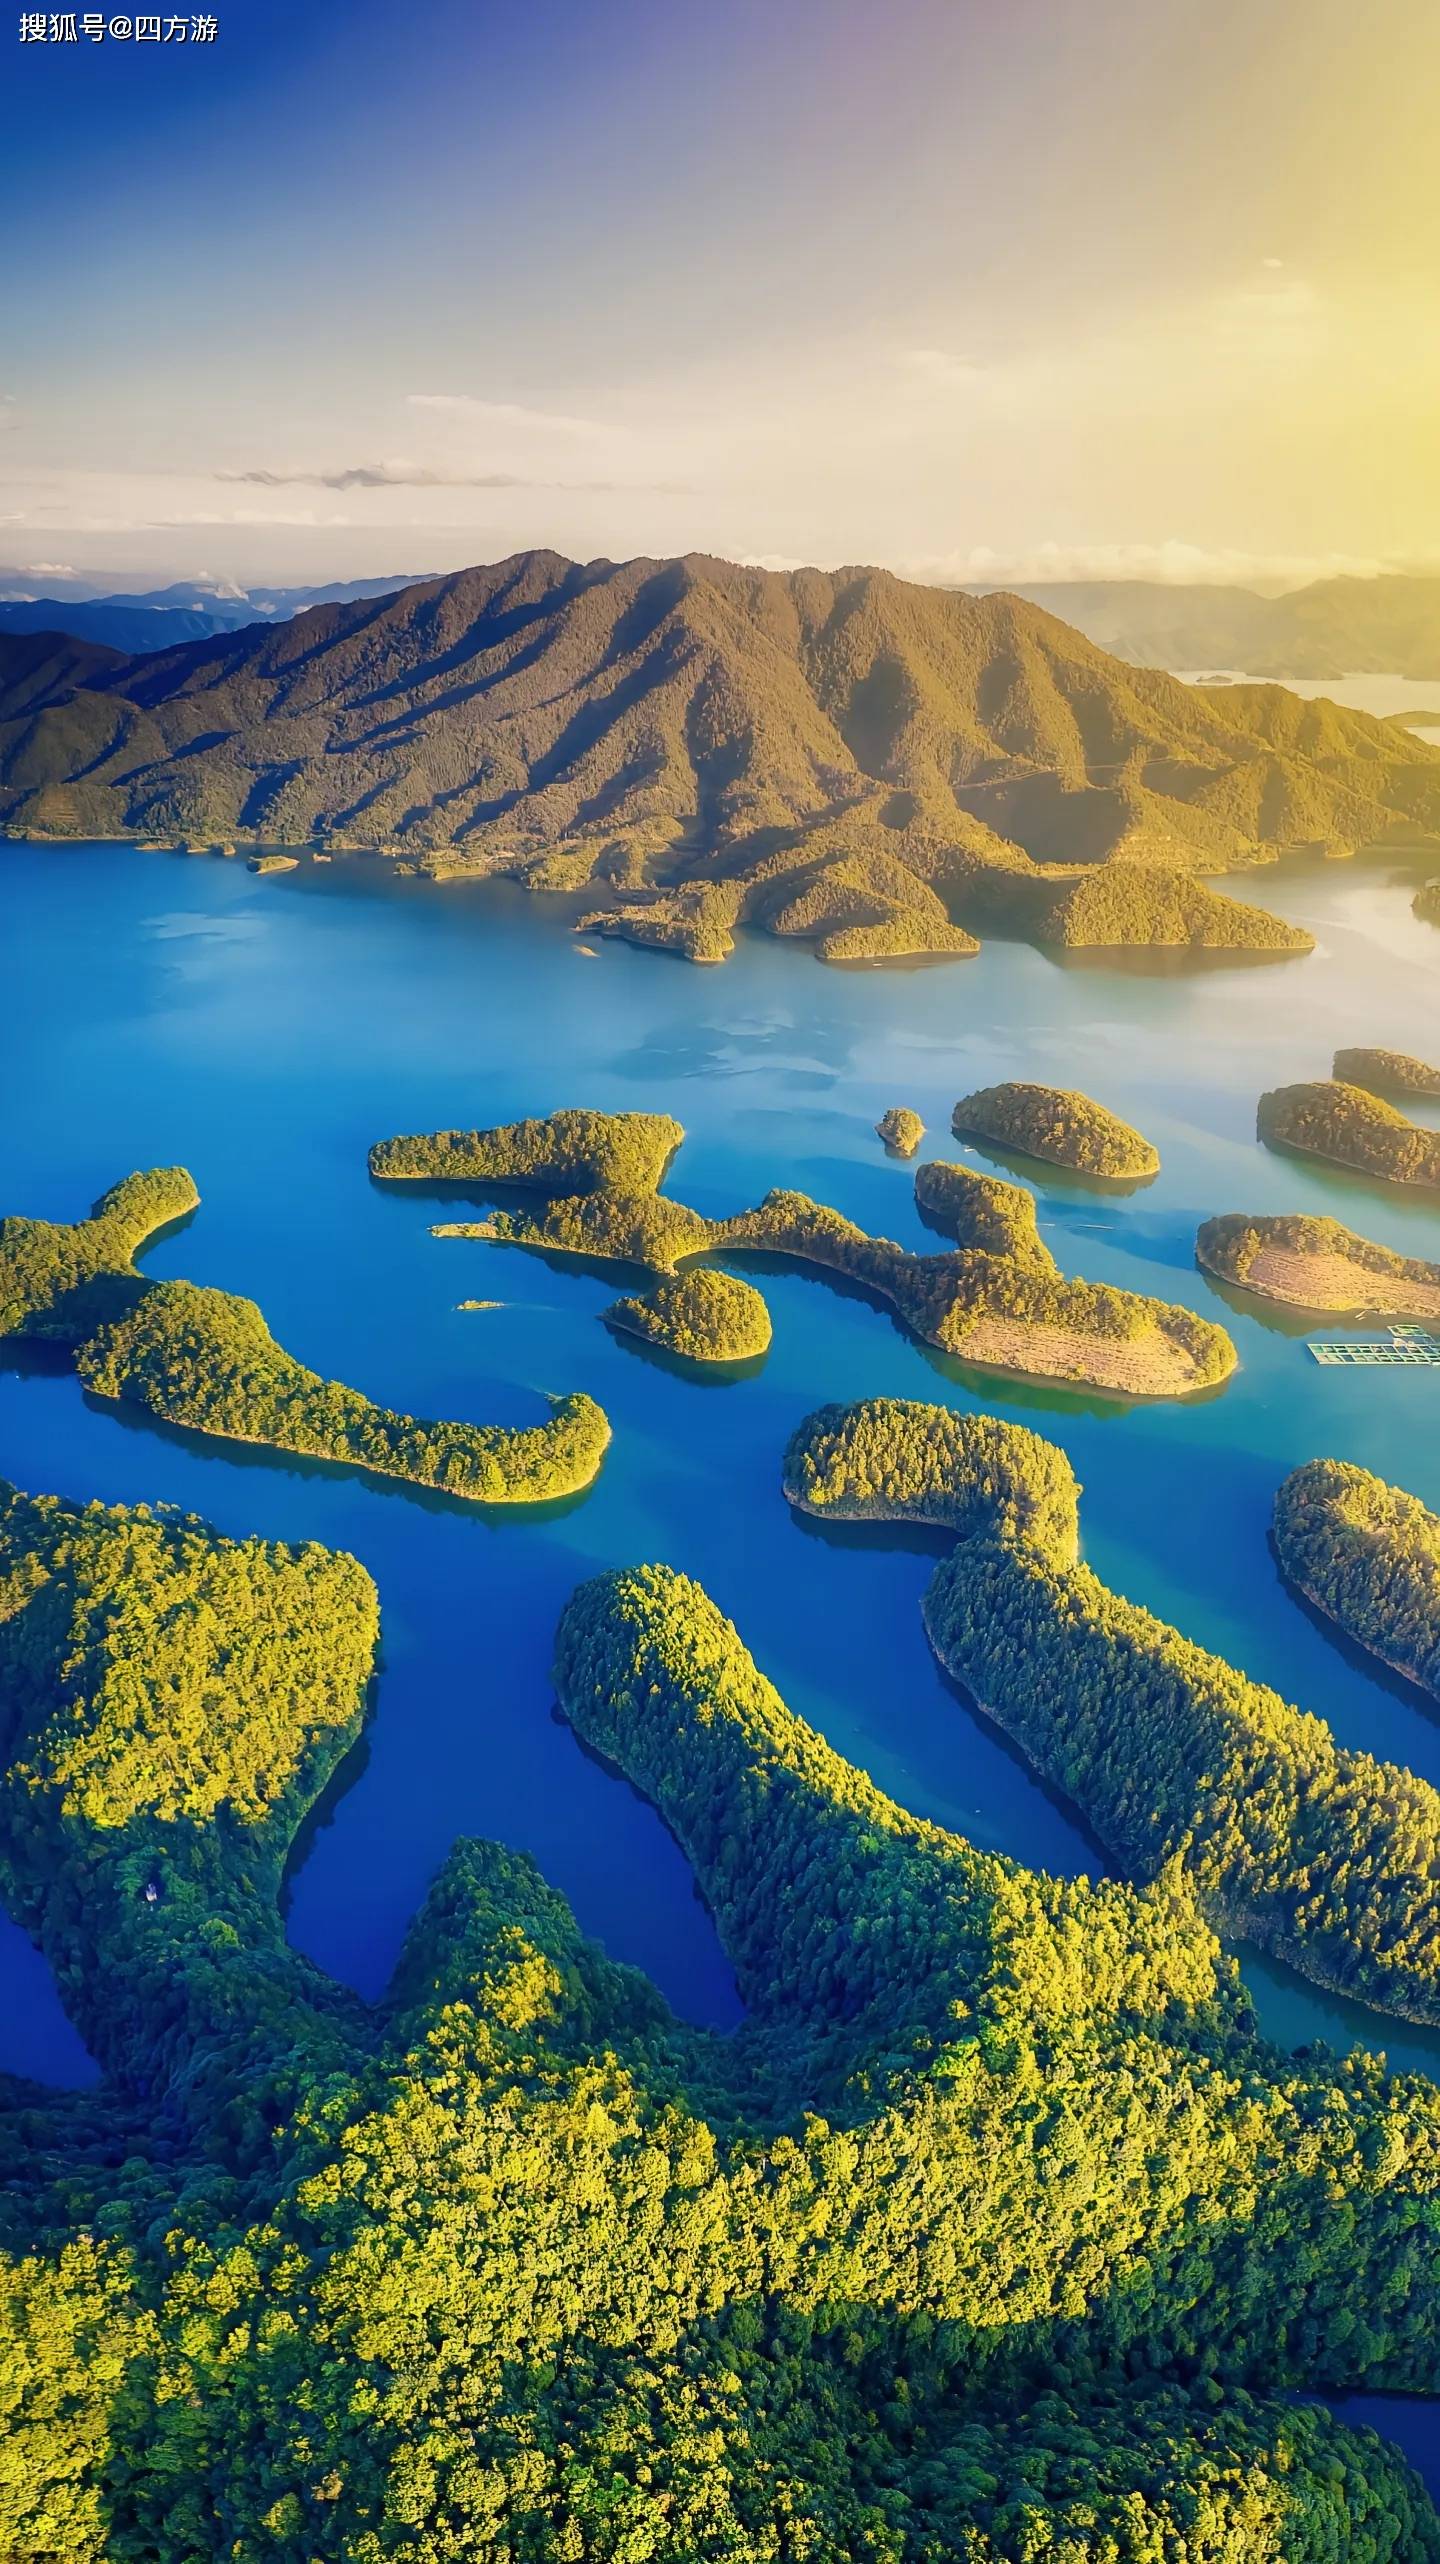 千岛湖:中国最美的淡水湖泊之一,惊艳世界的自然宝藏